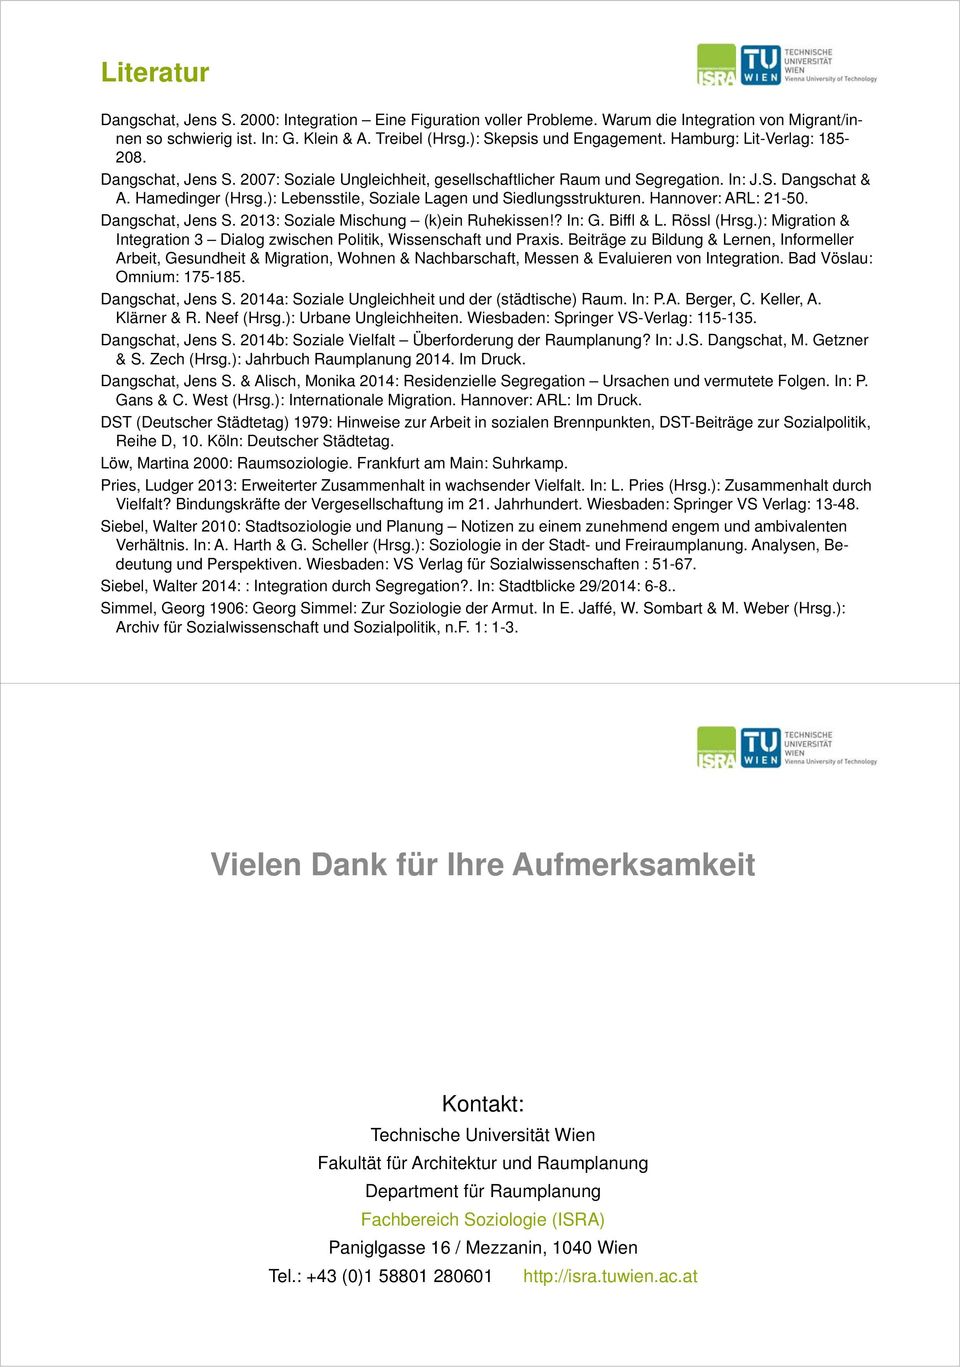 ): Lebensstile, Soziale Lagen und Siedlungsstrukturen. Hannover: ARL: 21-50. Dangschat, Jens S. 2013: Soziale Mischung (k)ein Ruhekissen!? In: G. Biffl & L. Rössl (Hrsg.